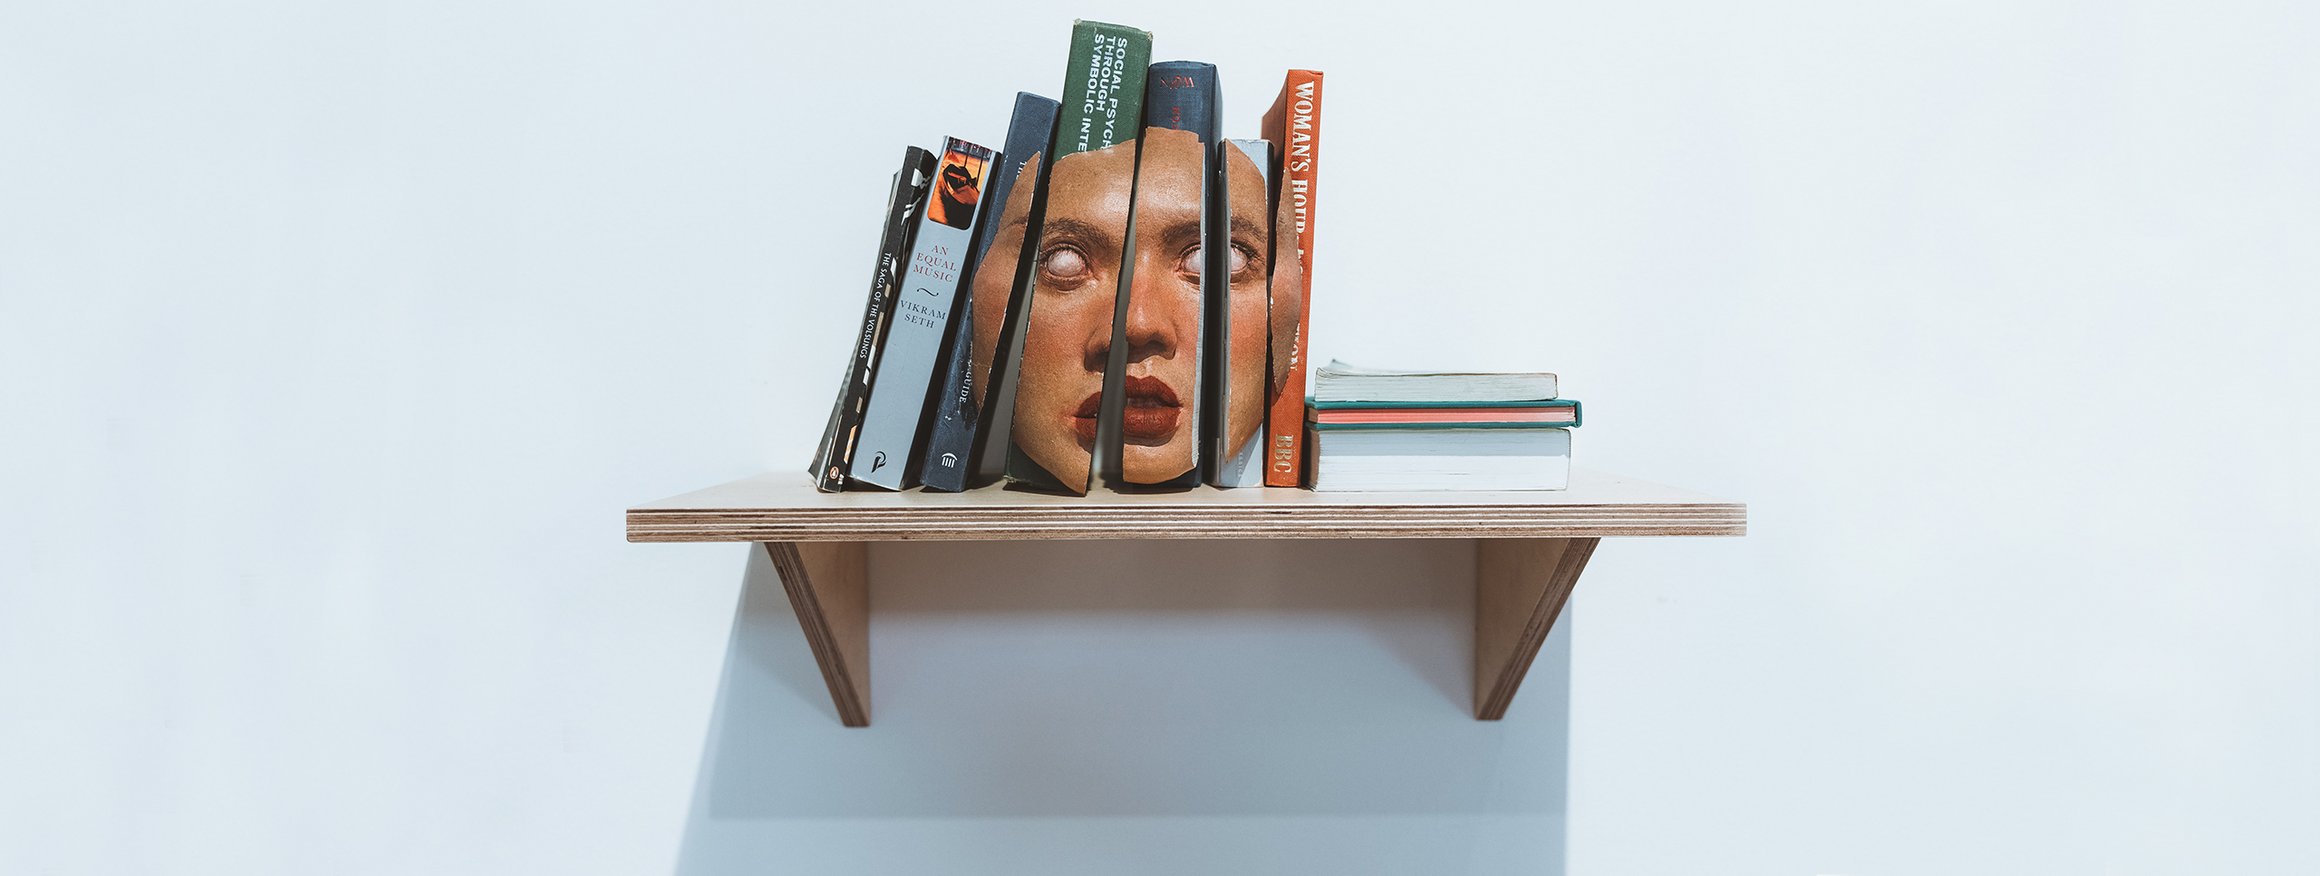 Das Foto zeigt mehrere Bücher, die auf einem Regalbrett stehen. Die Buchrücken ergeben zusammen eine Maske mit ausdruckslosem Blick.